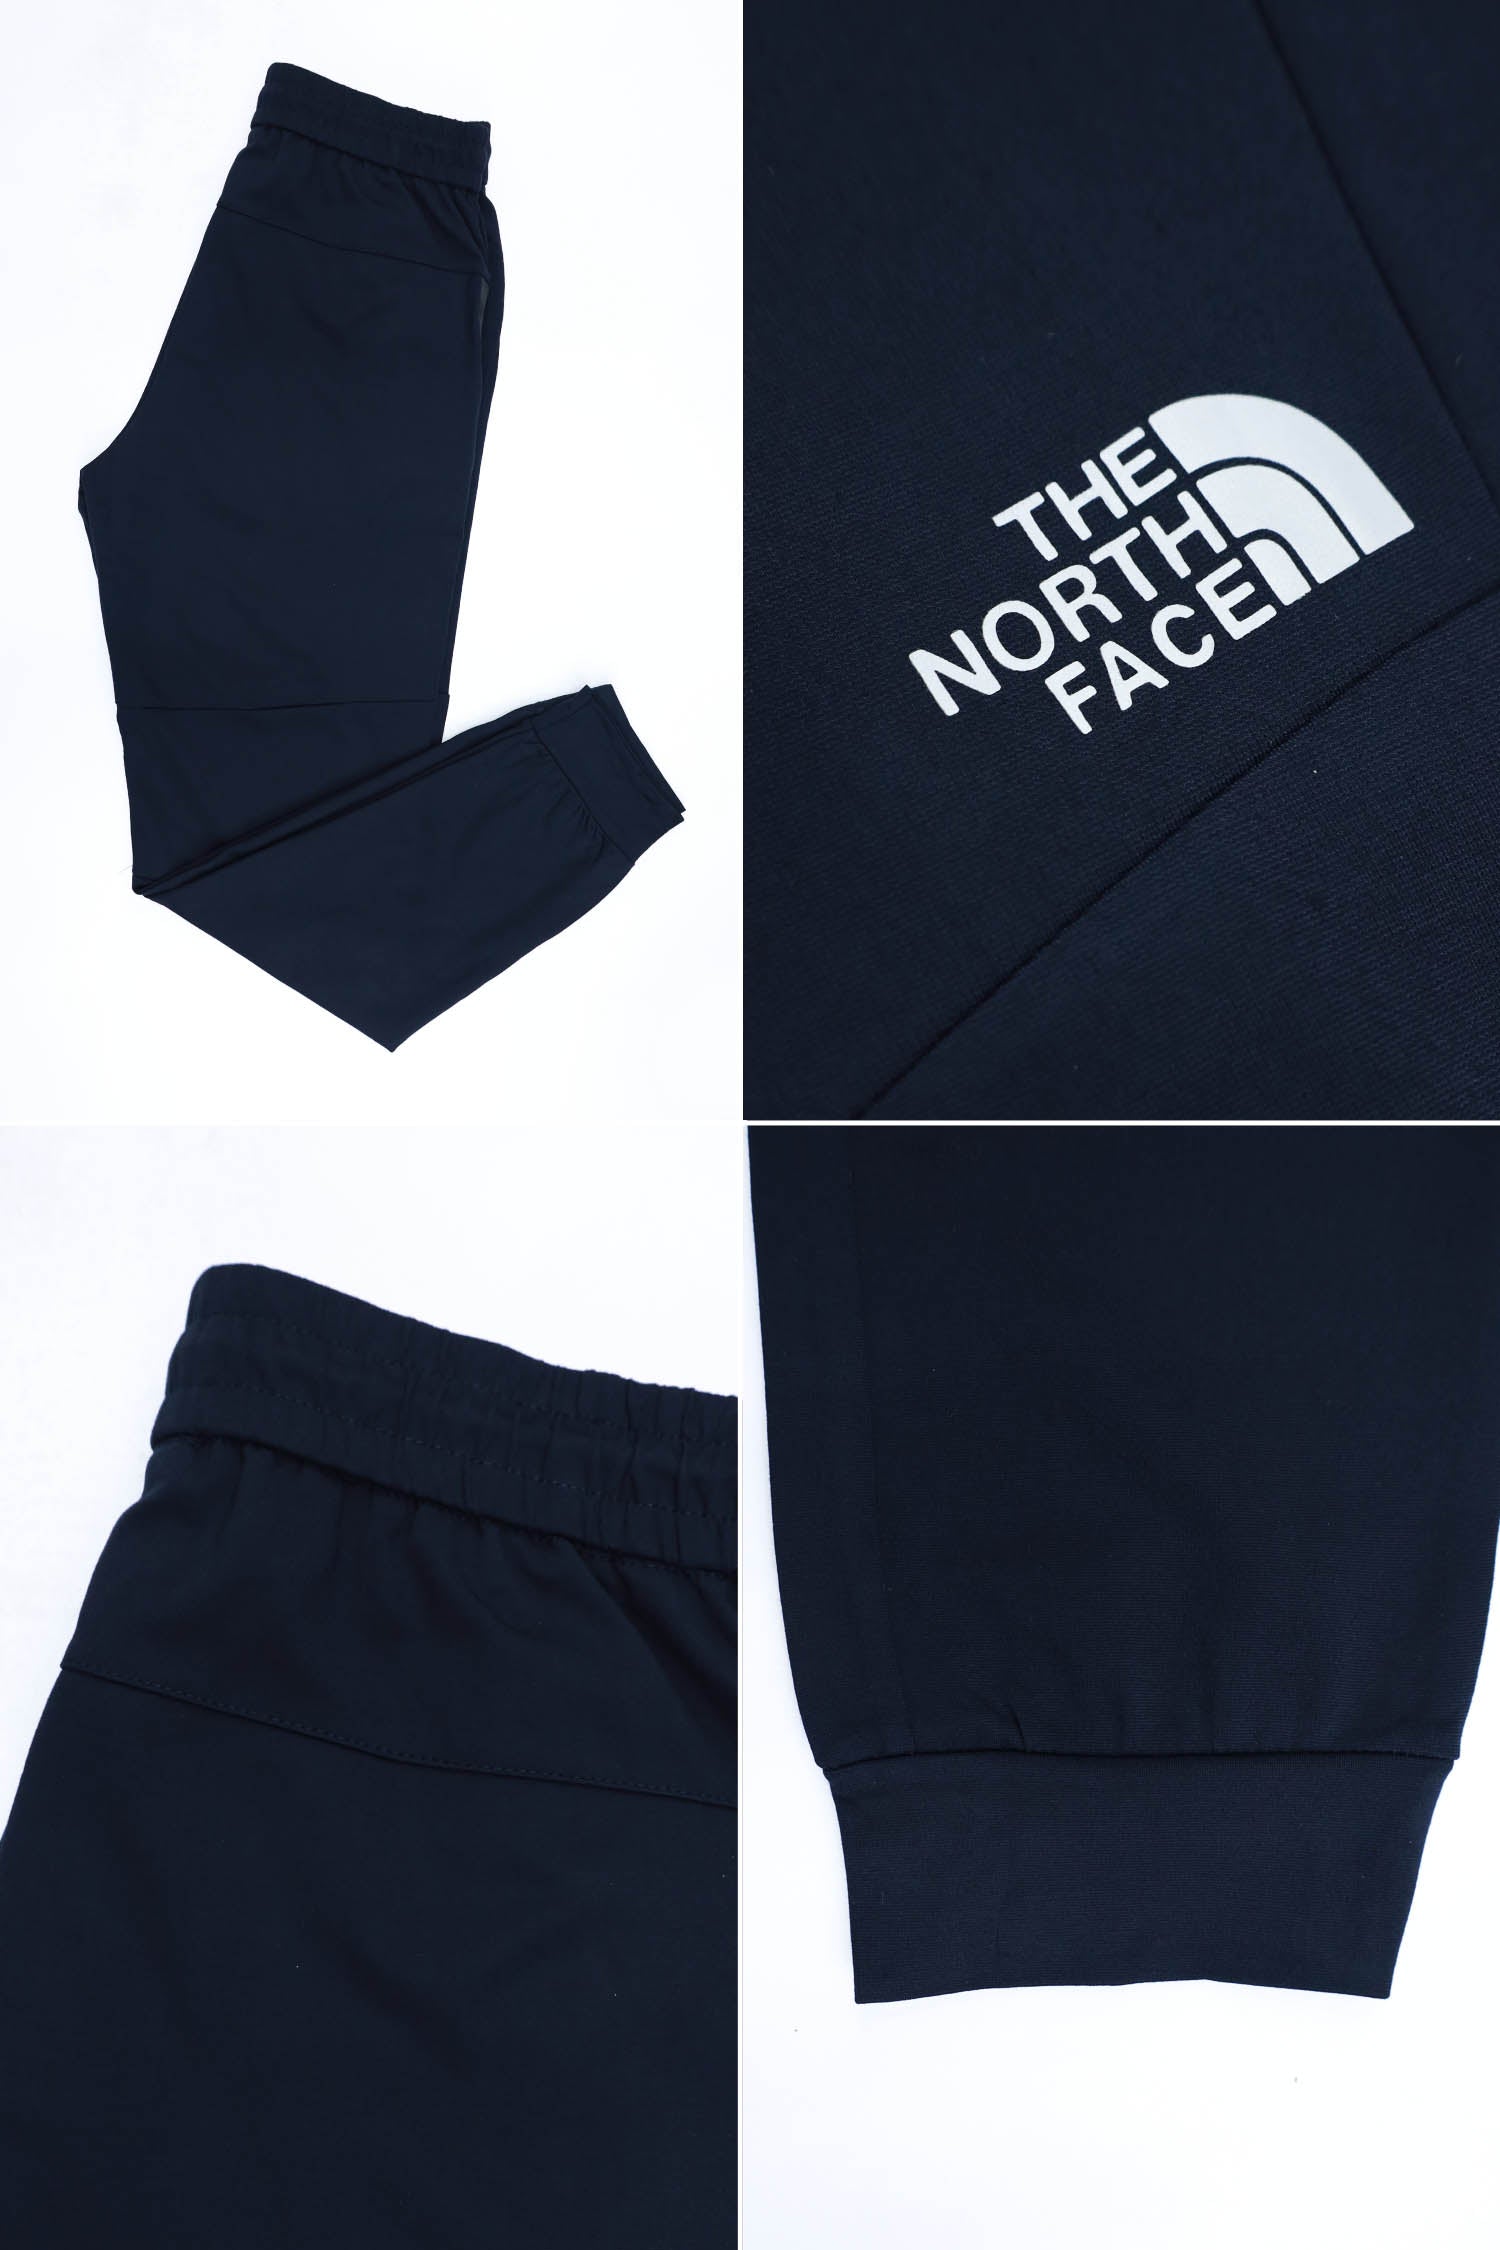 The Nrth Fce Reflector Logo Men Branded Trouser